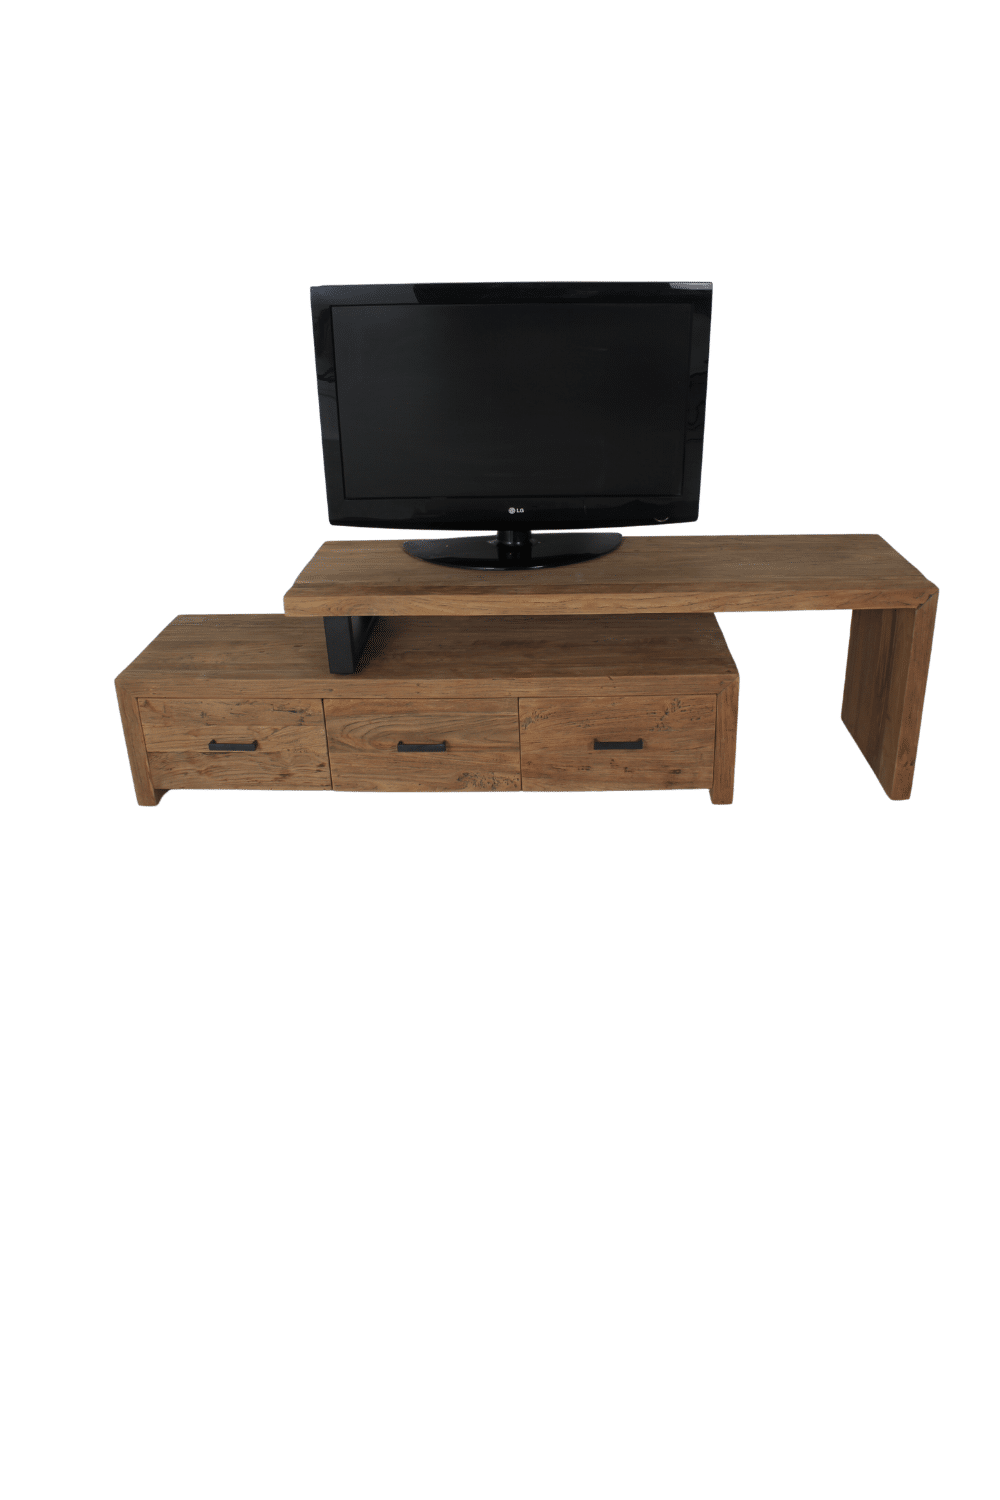 stoer landelijk tv meubel teak hout